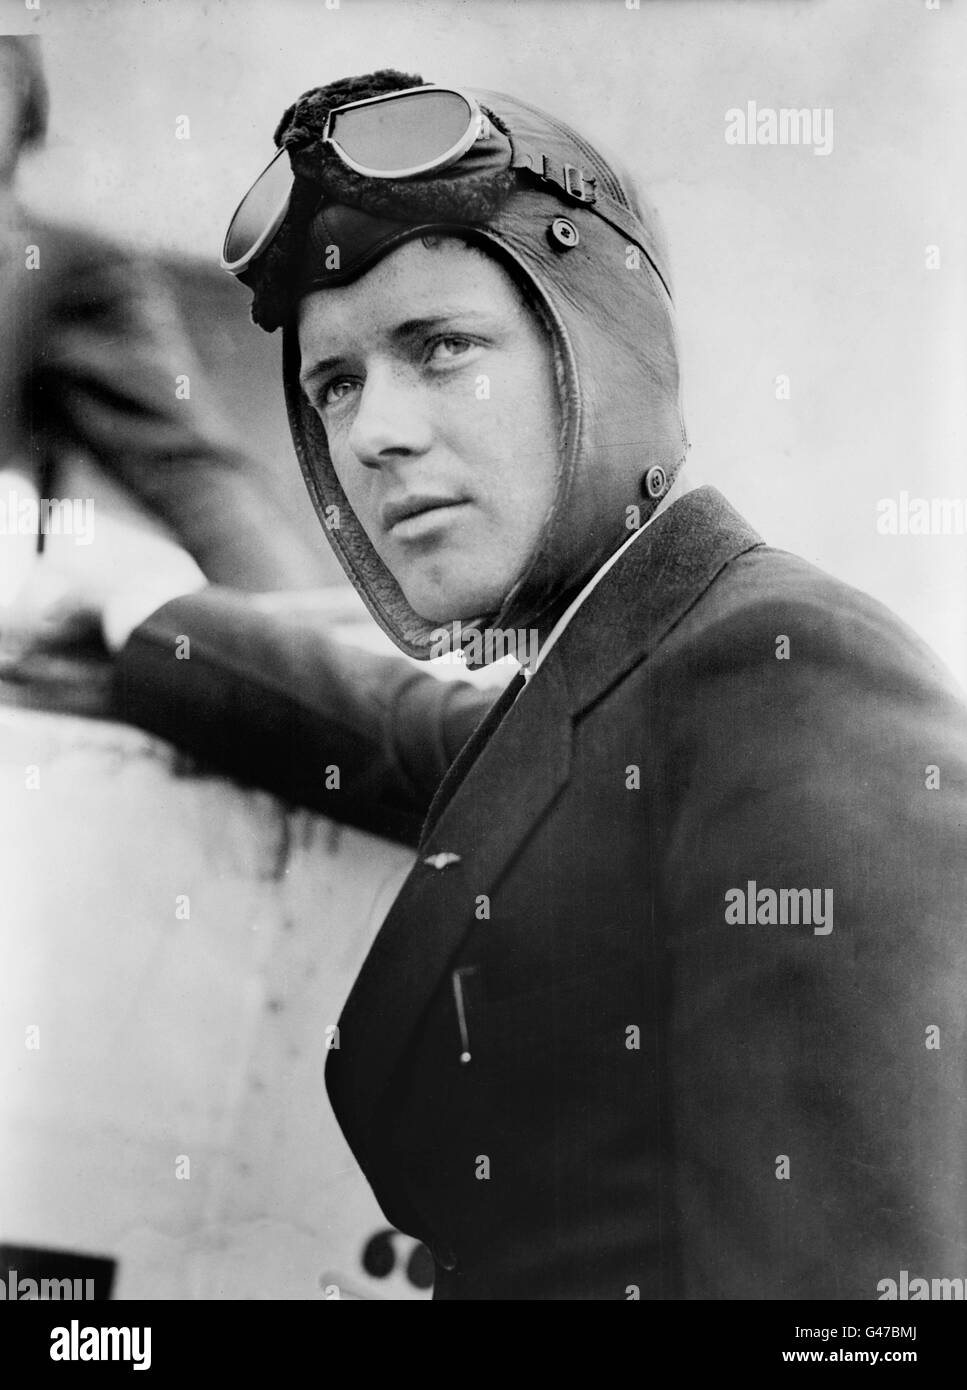 Charles Lindbergh (1902-1974), le célèbre aviateur américain pour son premier vol en solo non-stop à travers l'Atlantique en 1927. Photo de Bain News Service, date inconnue. Banque D'Images